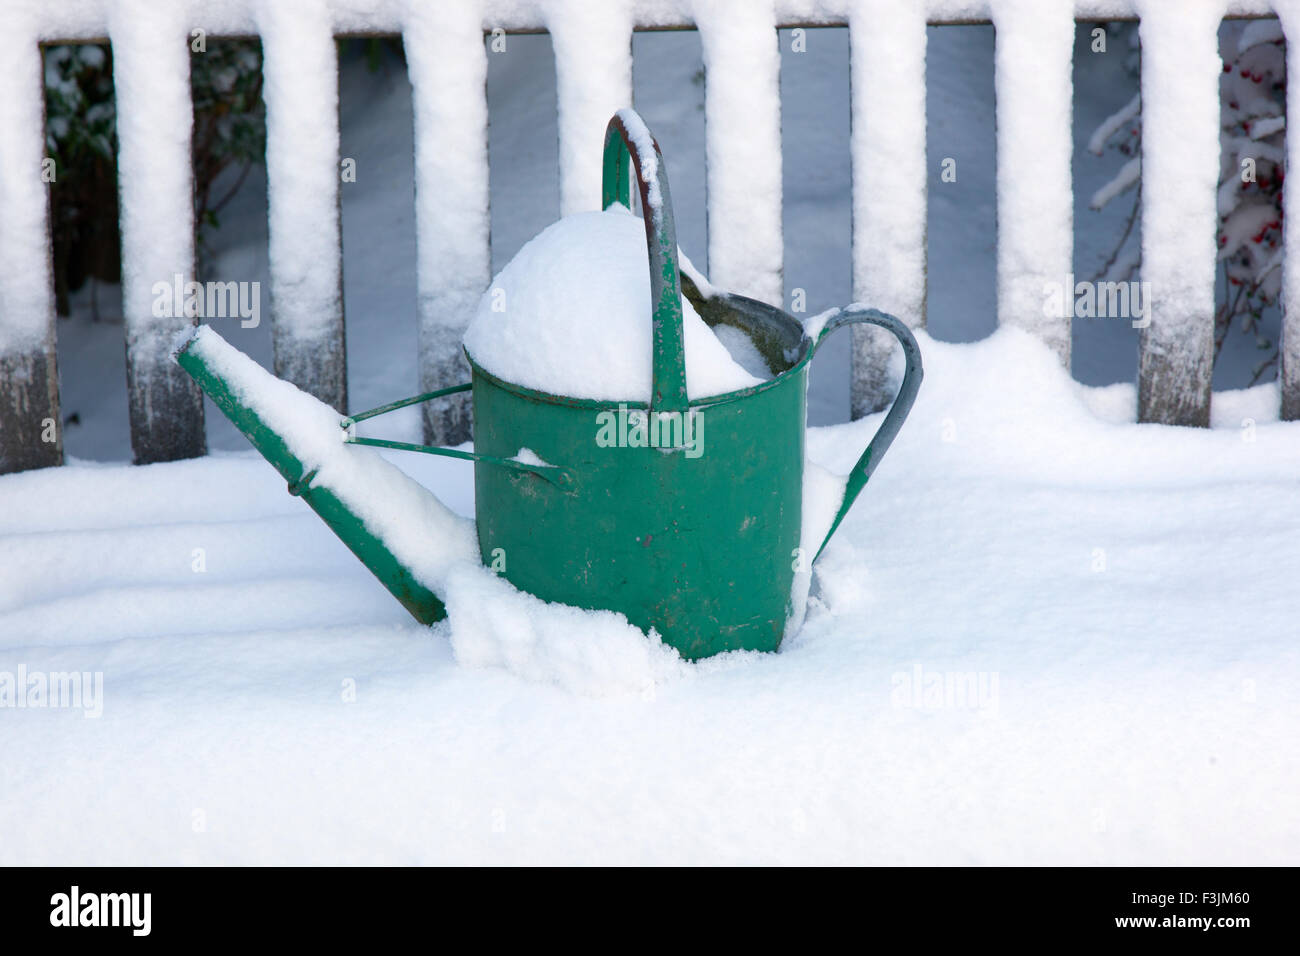 Jahreszeiten am Ende einer Garten Gießkanne, Garten-Sitzplatz im Schnee hinterlassen Stockfoto